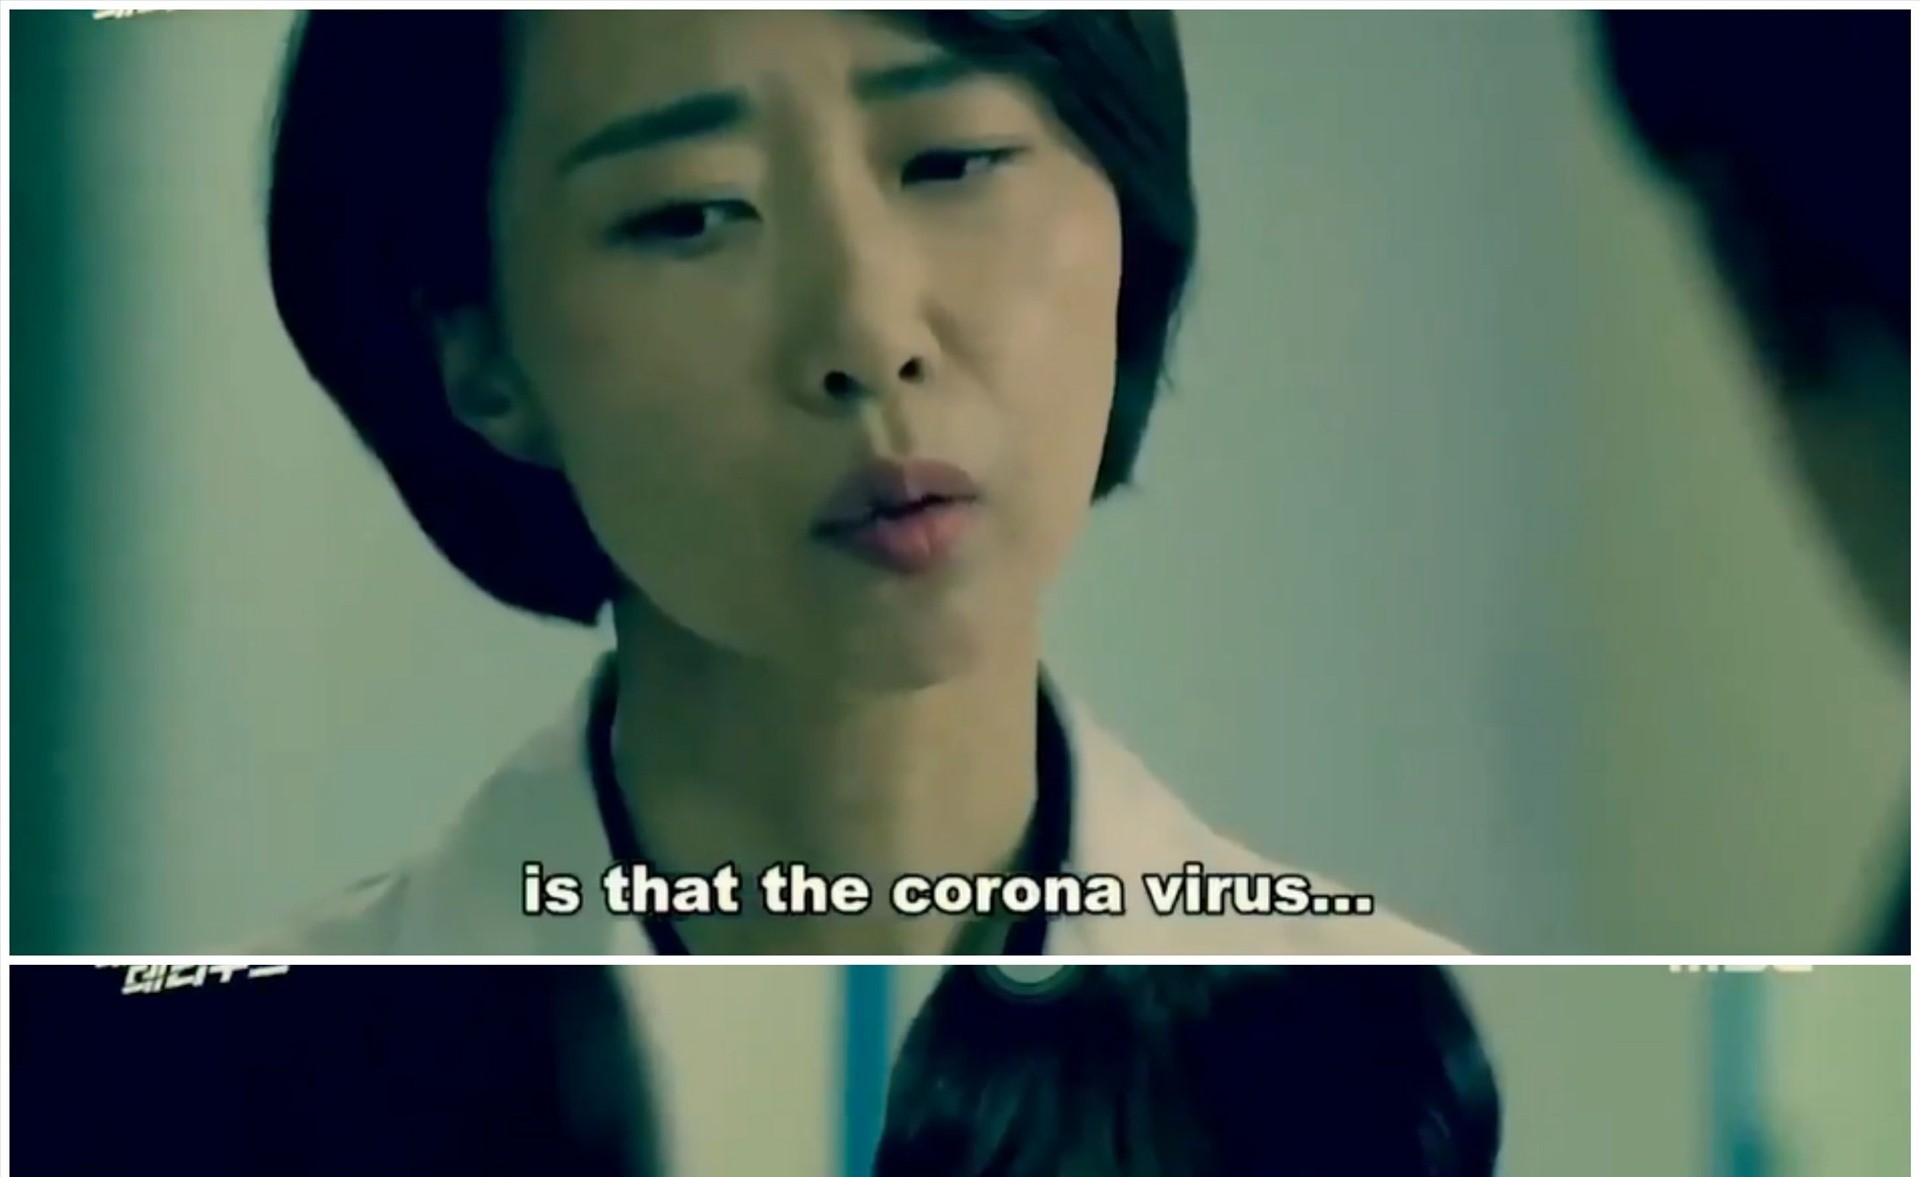 Phim từ năm 2018 đã "vô tình" dự báo trước dịch do virus Corona gây ra